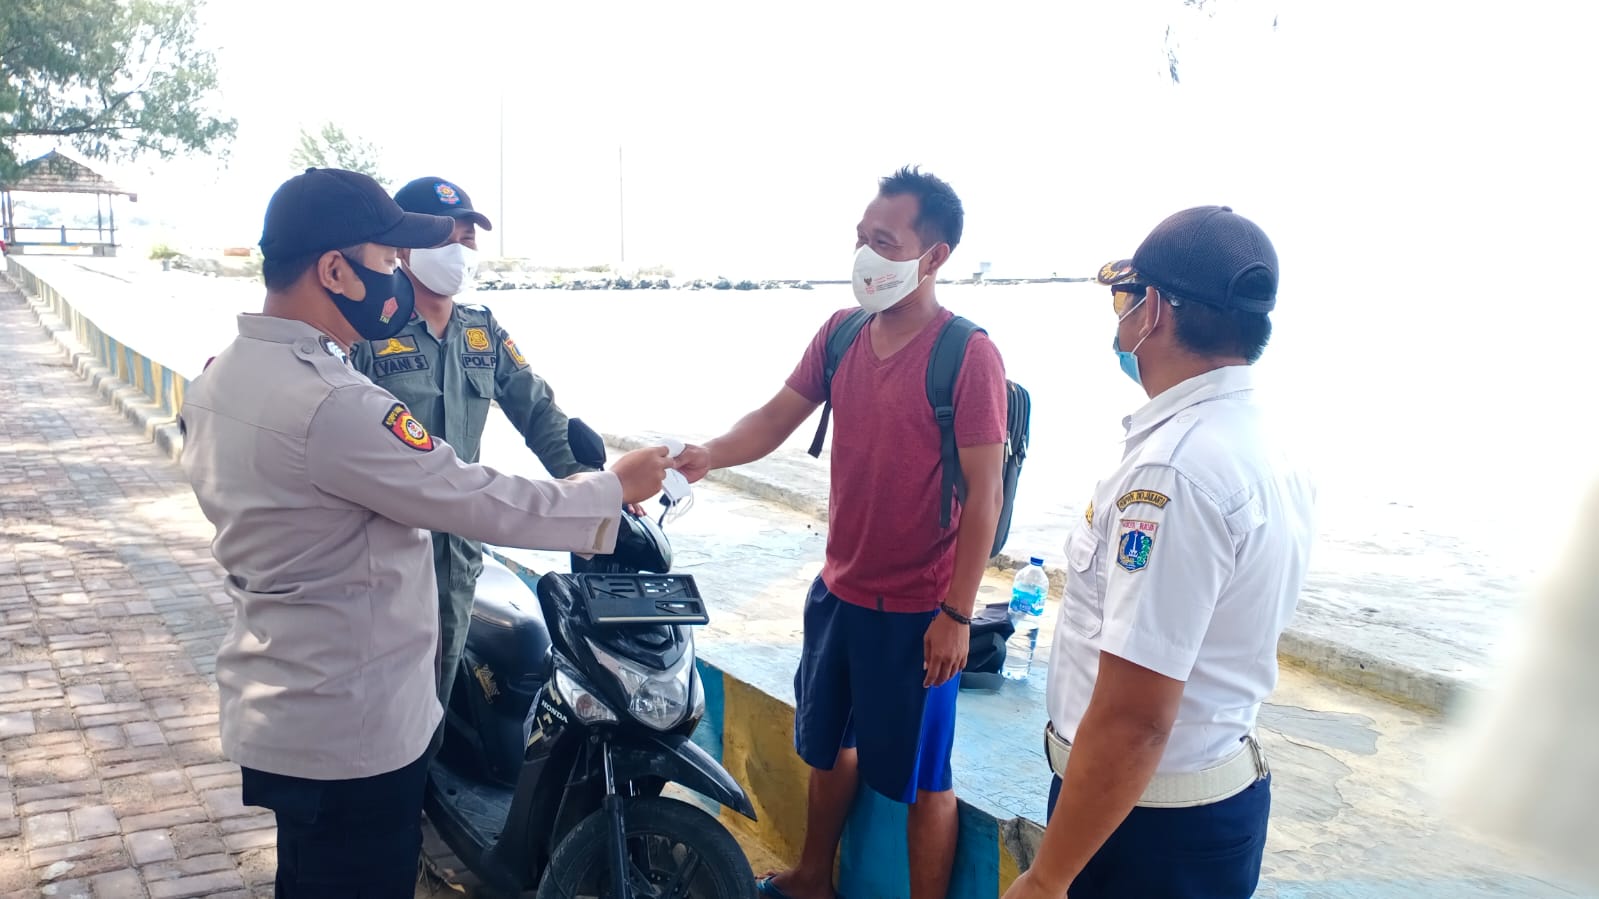 Cegah Sebaran Covid-19, Hari ini Polres Kepulauan Seribu dan Polsek Jajaran Bagikan 1.700 Masker ke Warga